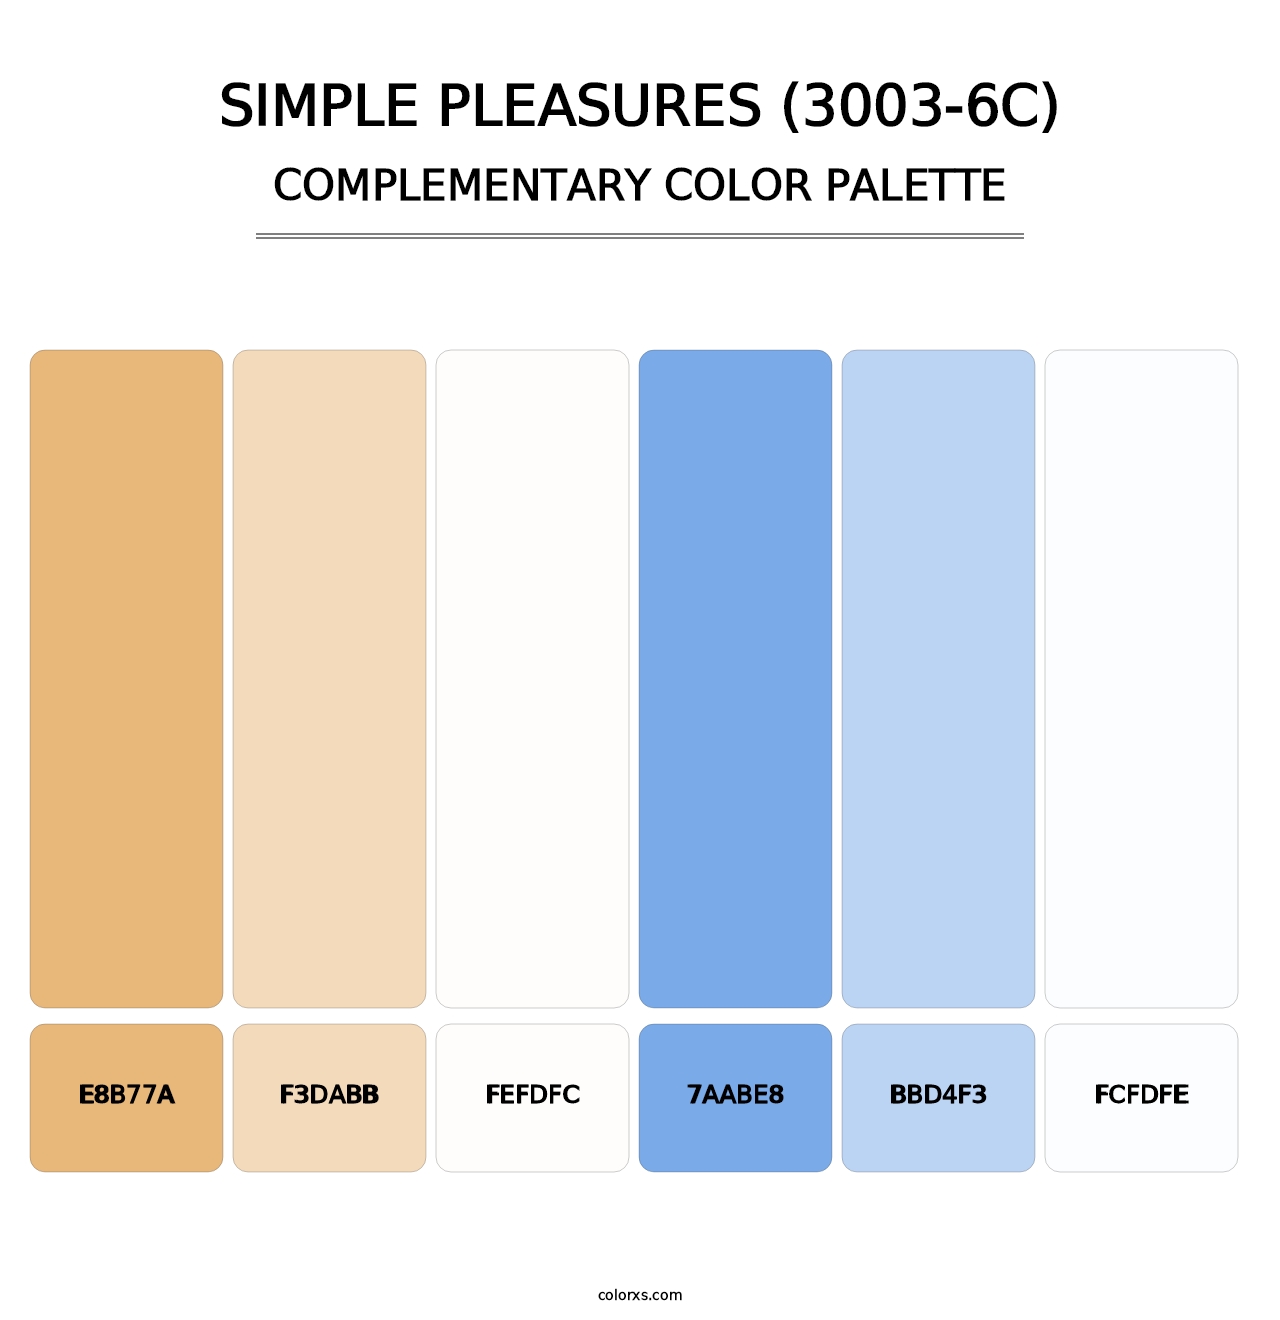 Simple Pleasures (3003-6C) - Complementary Color Palette